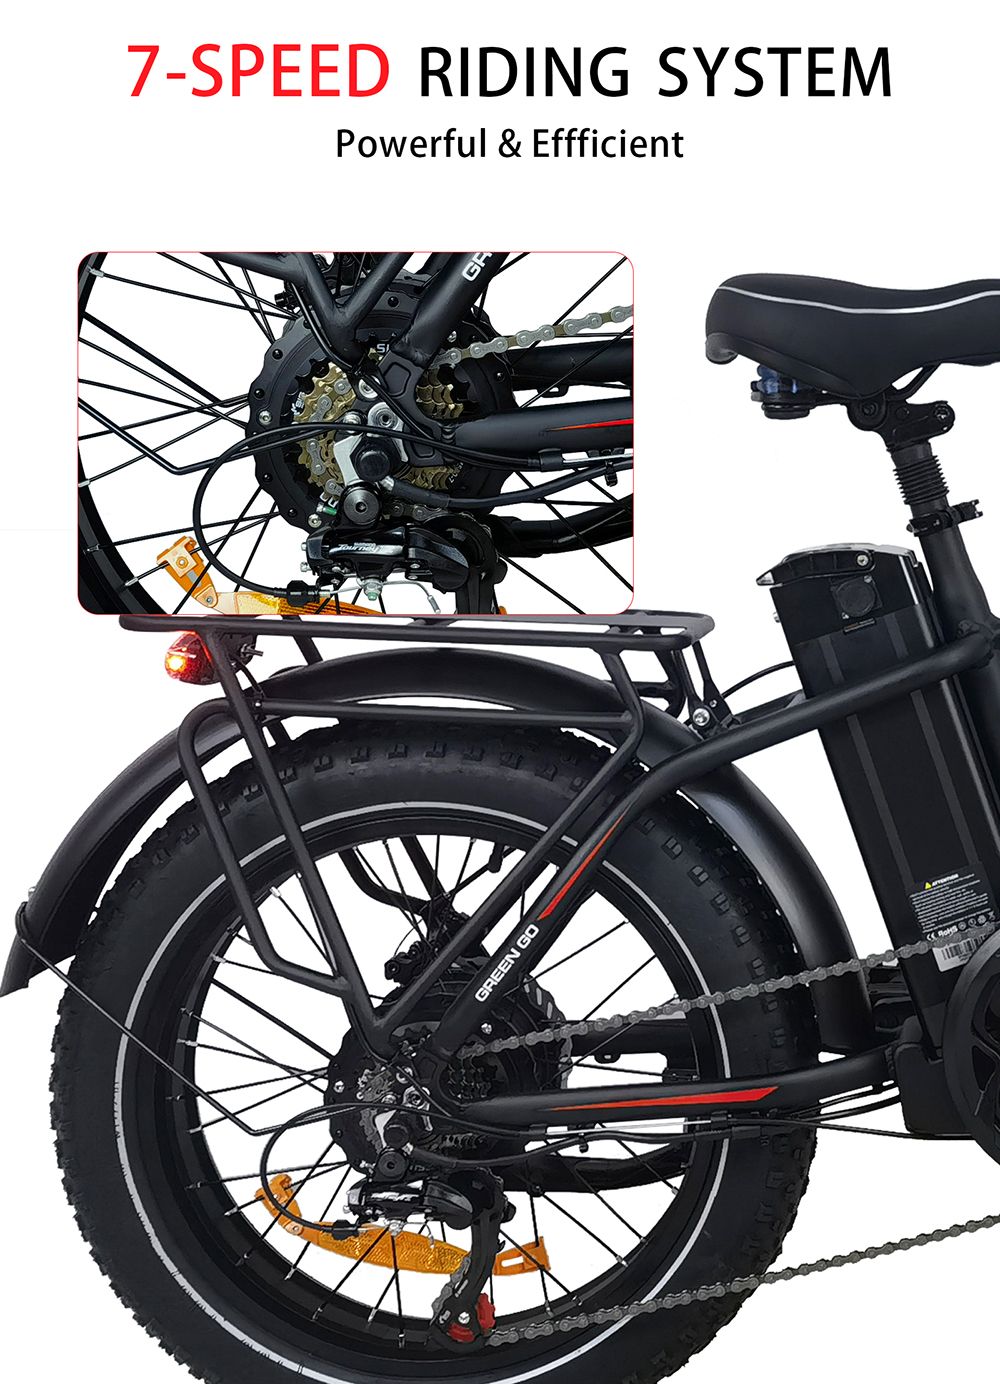 Vélo électrique BAOLUJIE DZ2031, moteur 500 W, batterie 48 V 13 Ah, pneu 20 x 4.0 pouces, portée 35-45 km, vitesse maximale 40 km/h, frein à disque mécanique SHIMANO à 7 vitesses - Gris